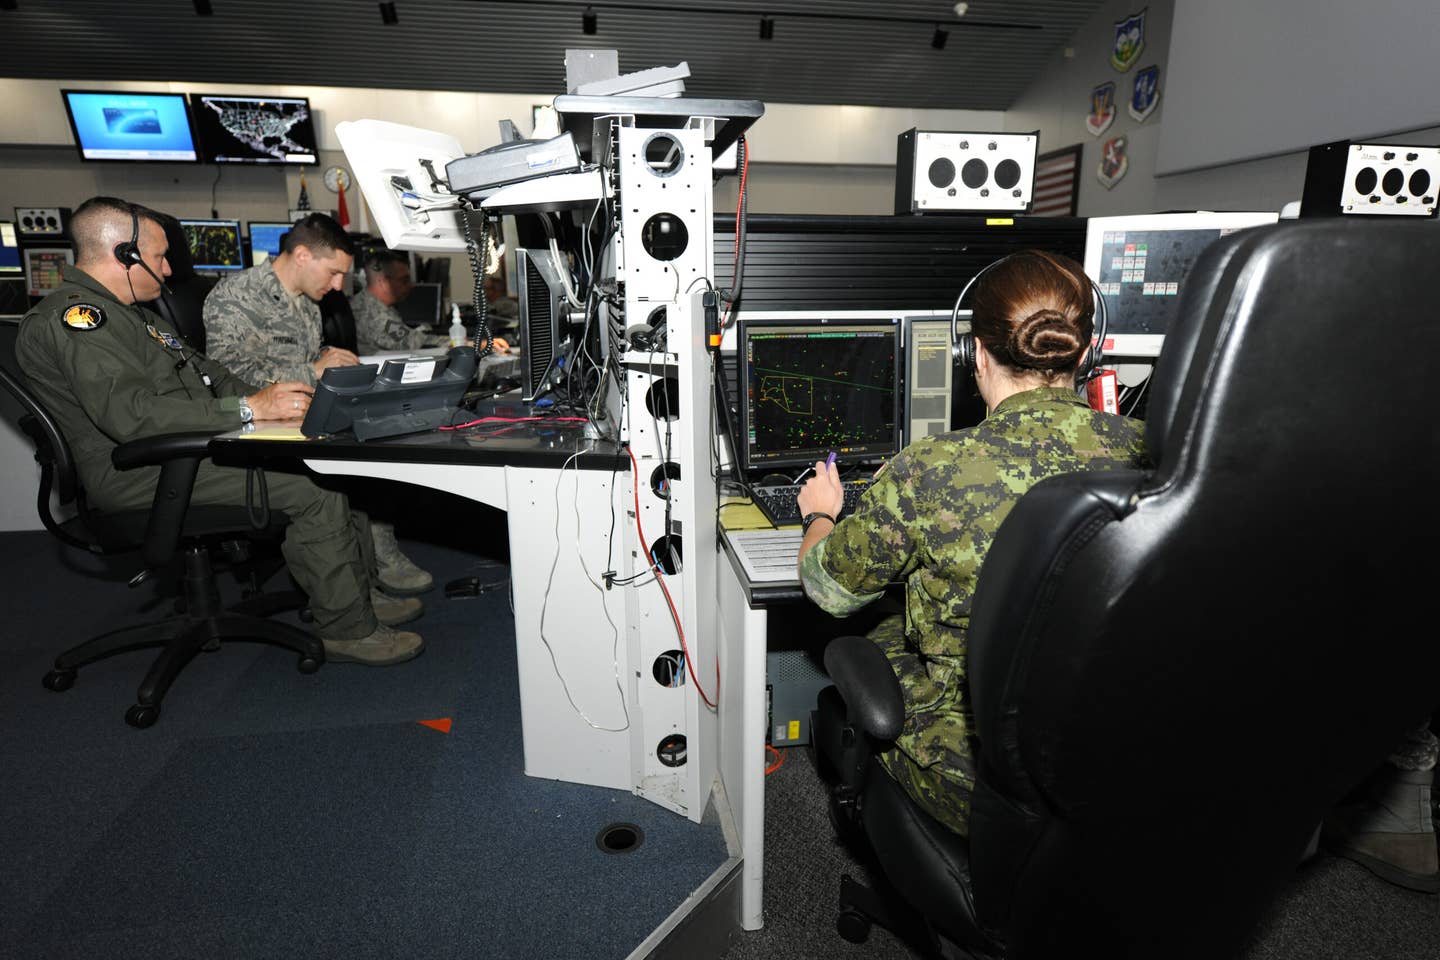 Východní sektor protivzdušné obrany (EADS) Letci provádějící 24/7 misi protivzdušné obrany.  CBC2 výrazně zlepší rozhraní a využití datových operátorů pro obranu severoamerického vzdušného prostoru.  (USAF)